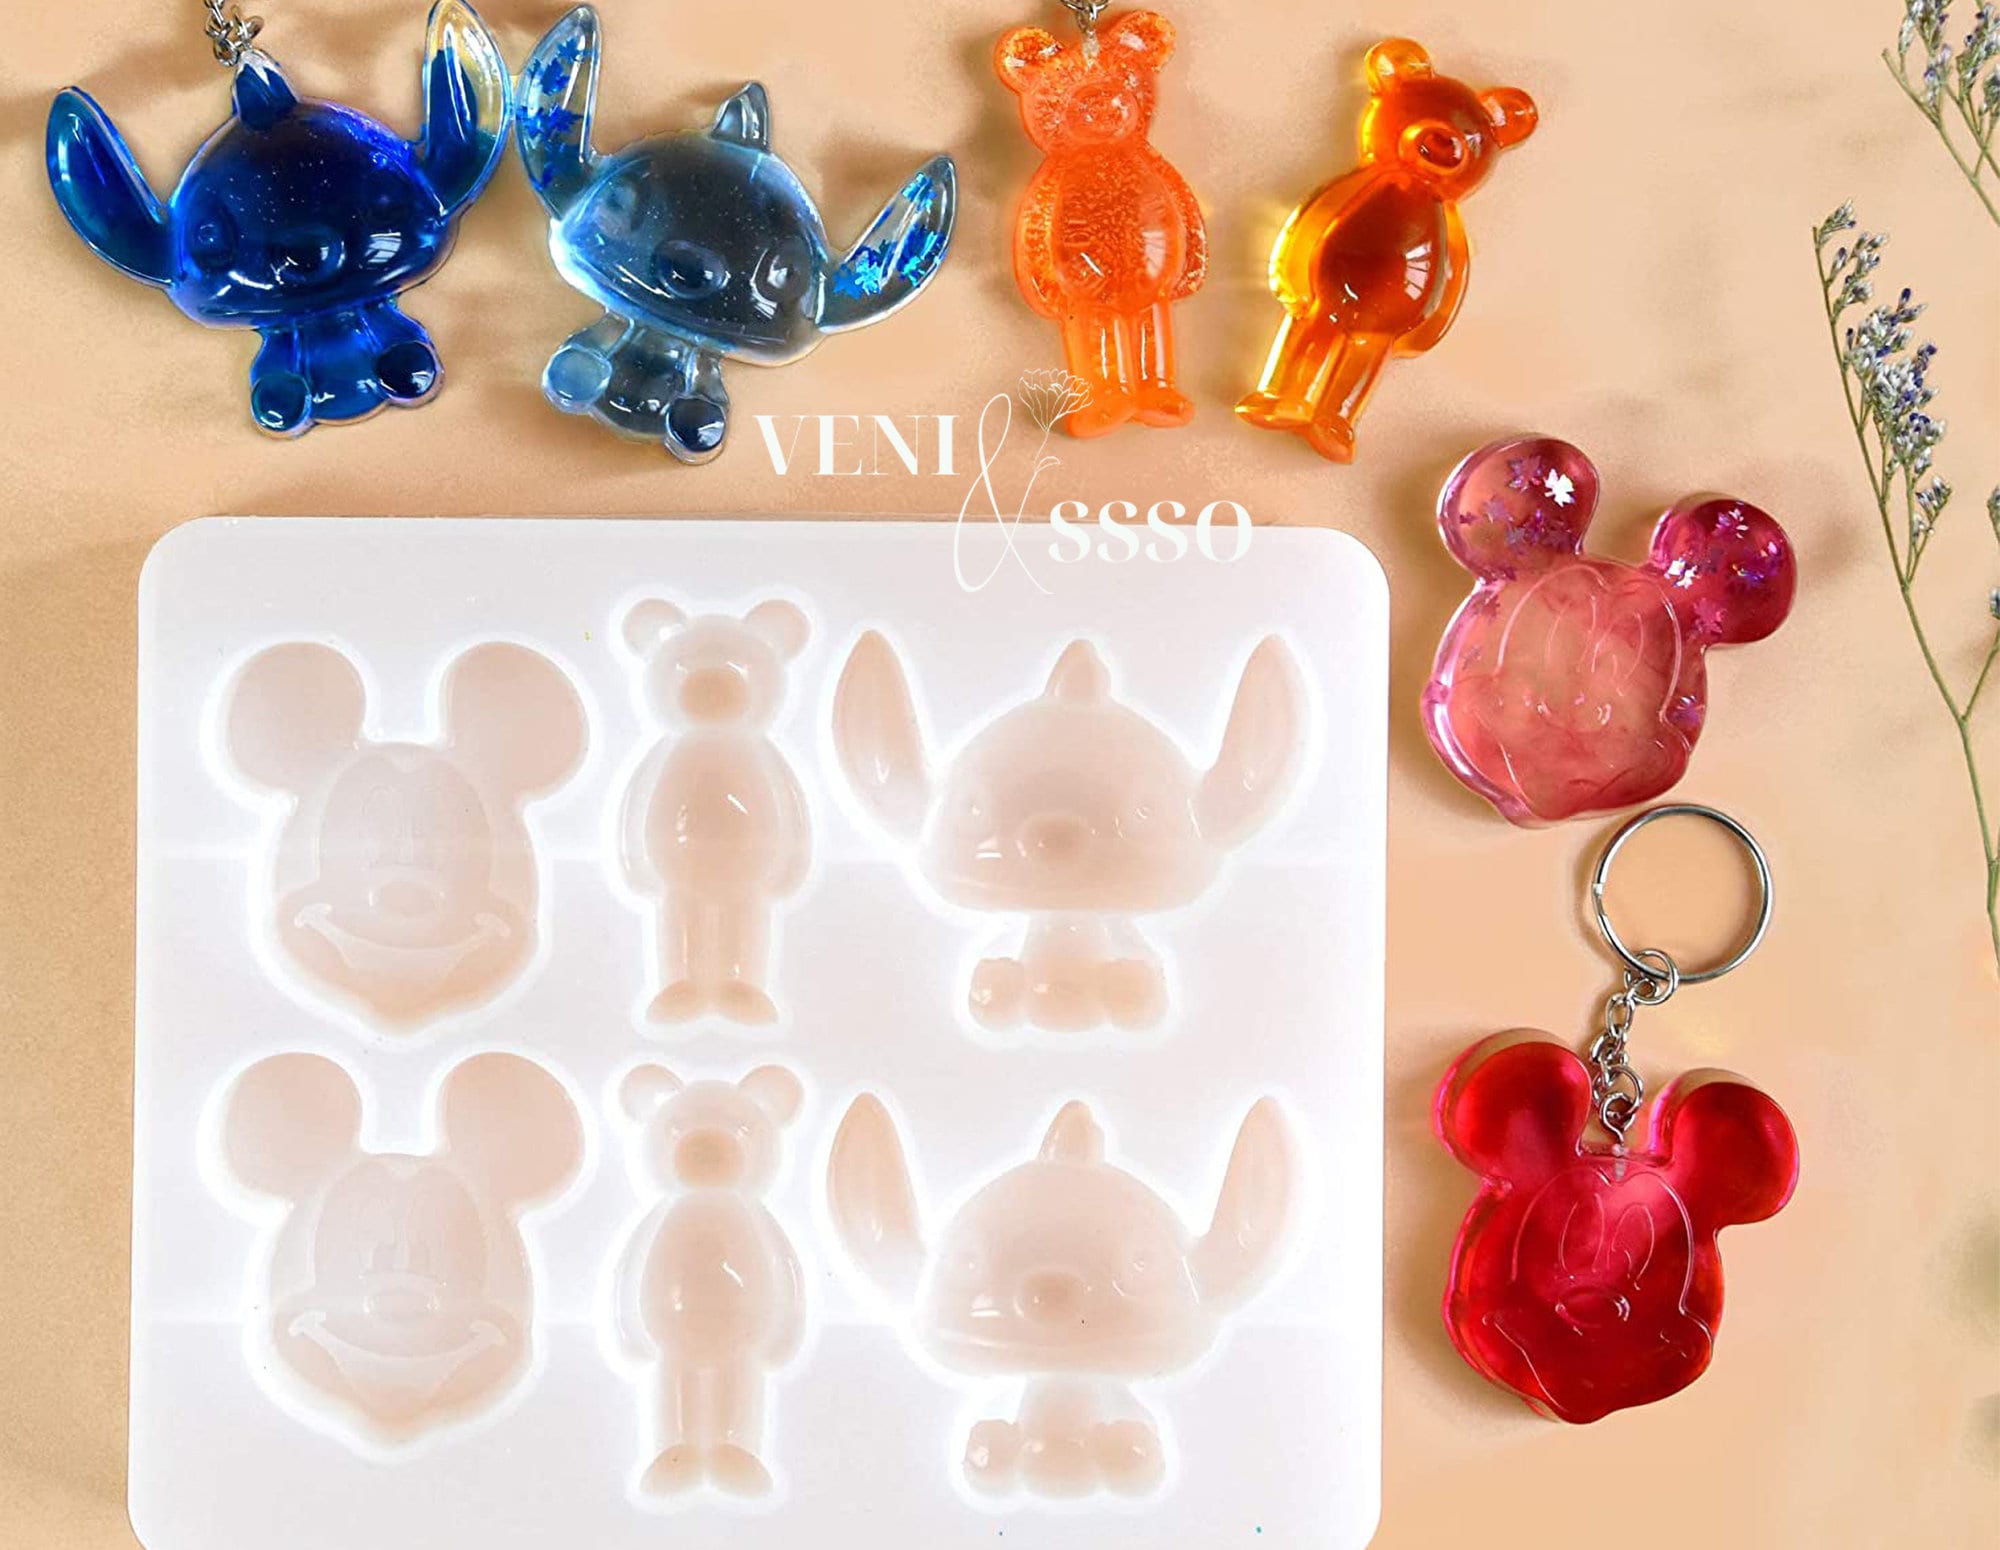 Disney Parks Stitch Straw & Silicone Ice Mold Tray Lilo & Stitch ~ NEW /  Sealed